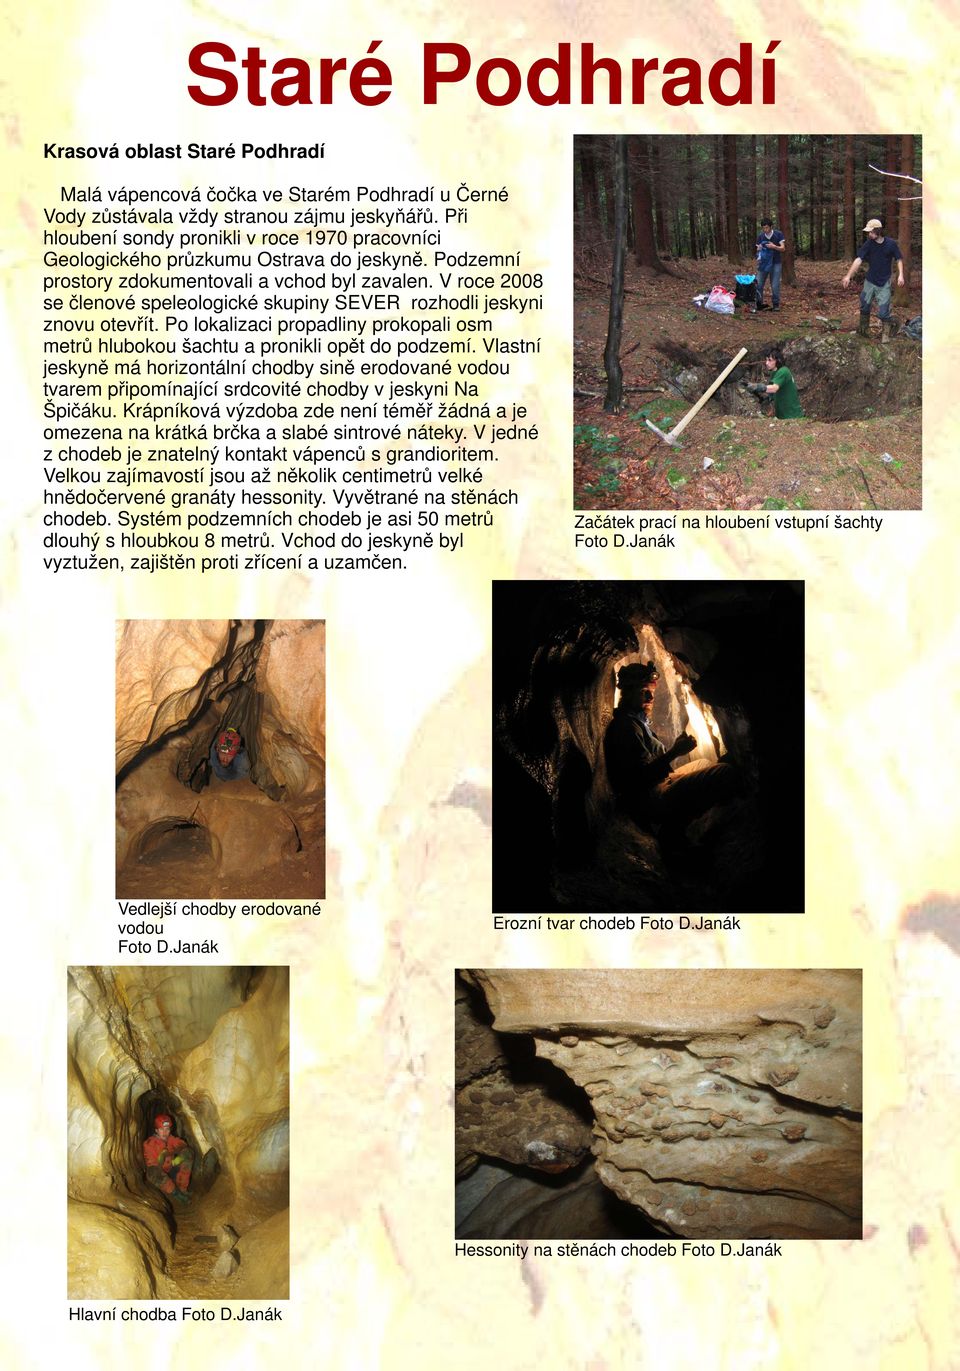 V roce 2008 se členové speleologické skupiny SEVER rozhodli jeskyni znovu otevřít. Po lokalizaci propadliny prokopali osm metrů hlubokou šachtu a pronikli opět do podzemí.